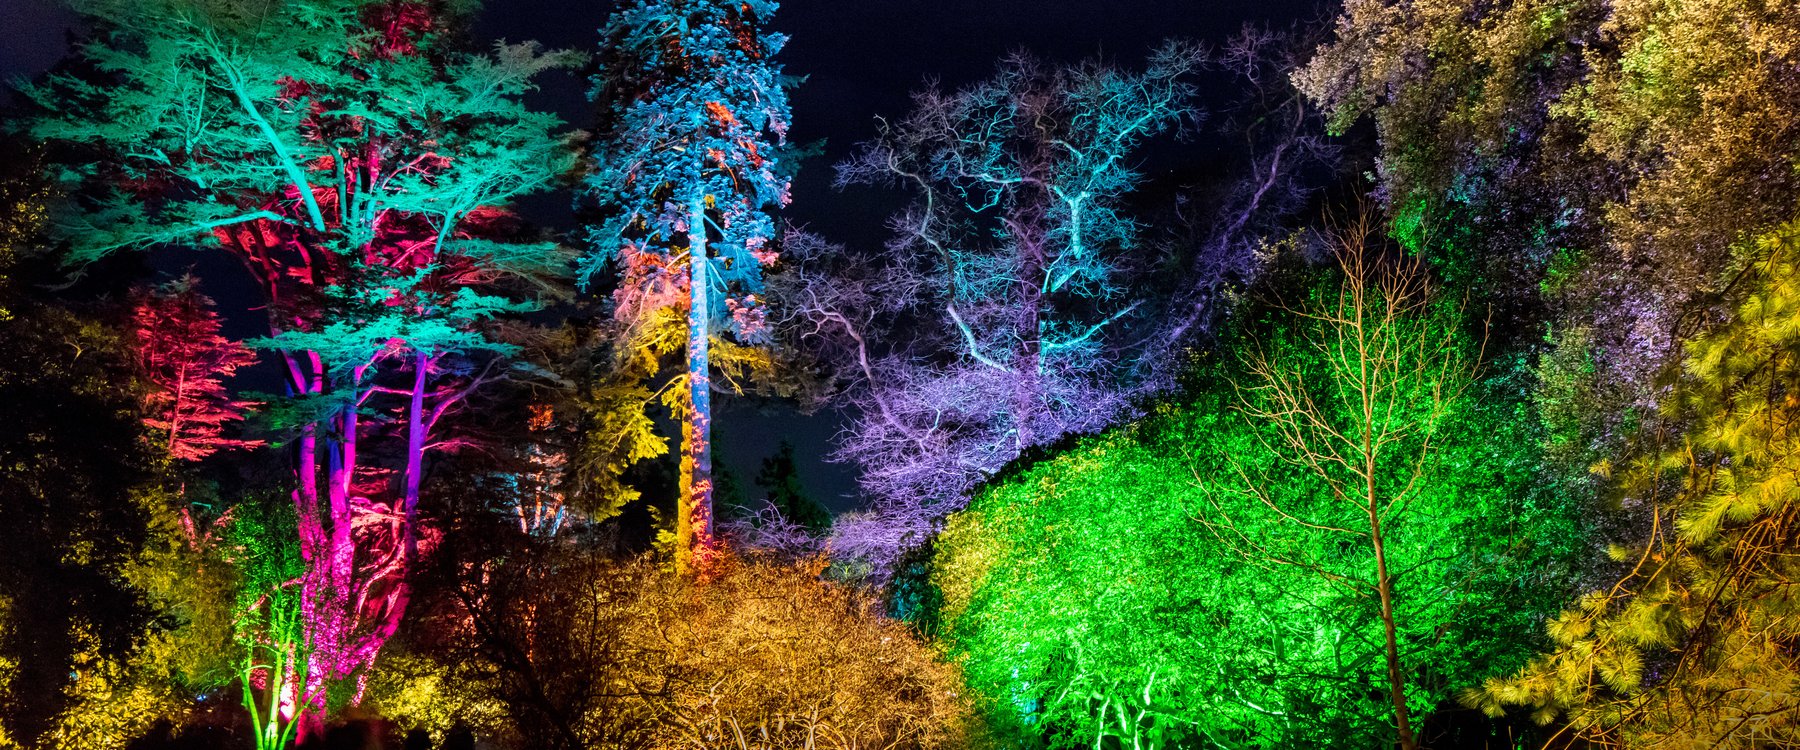 Christmas Illuminated Trail at Westonbirt Arboretum Red Kite Days